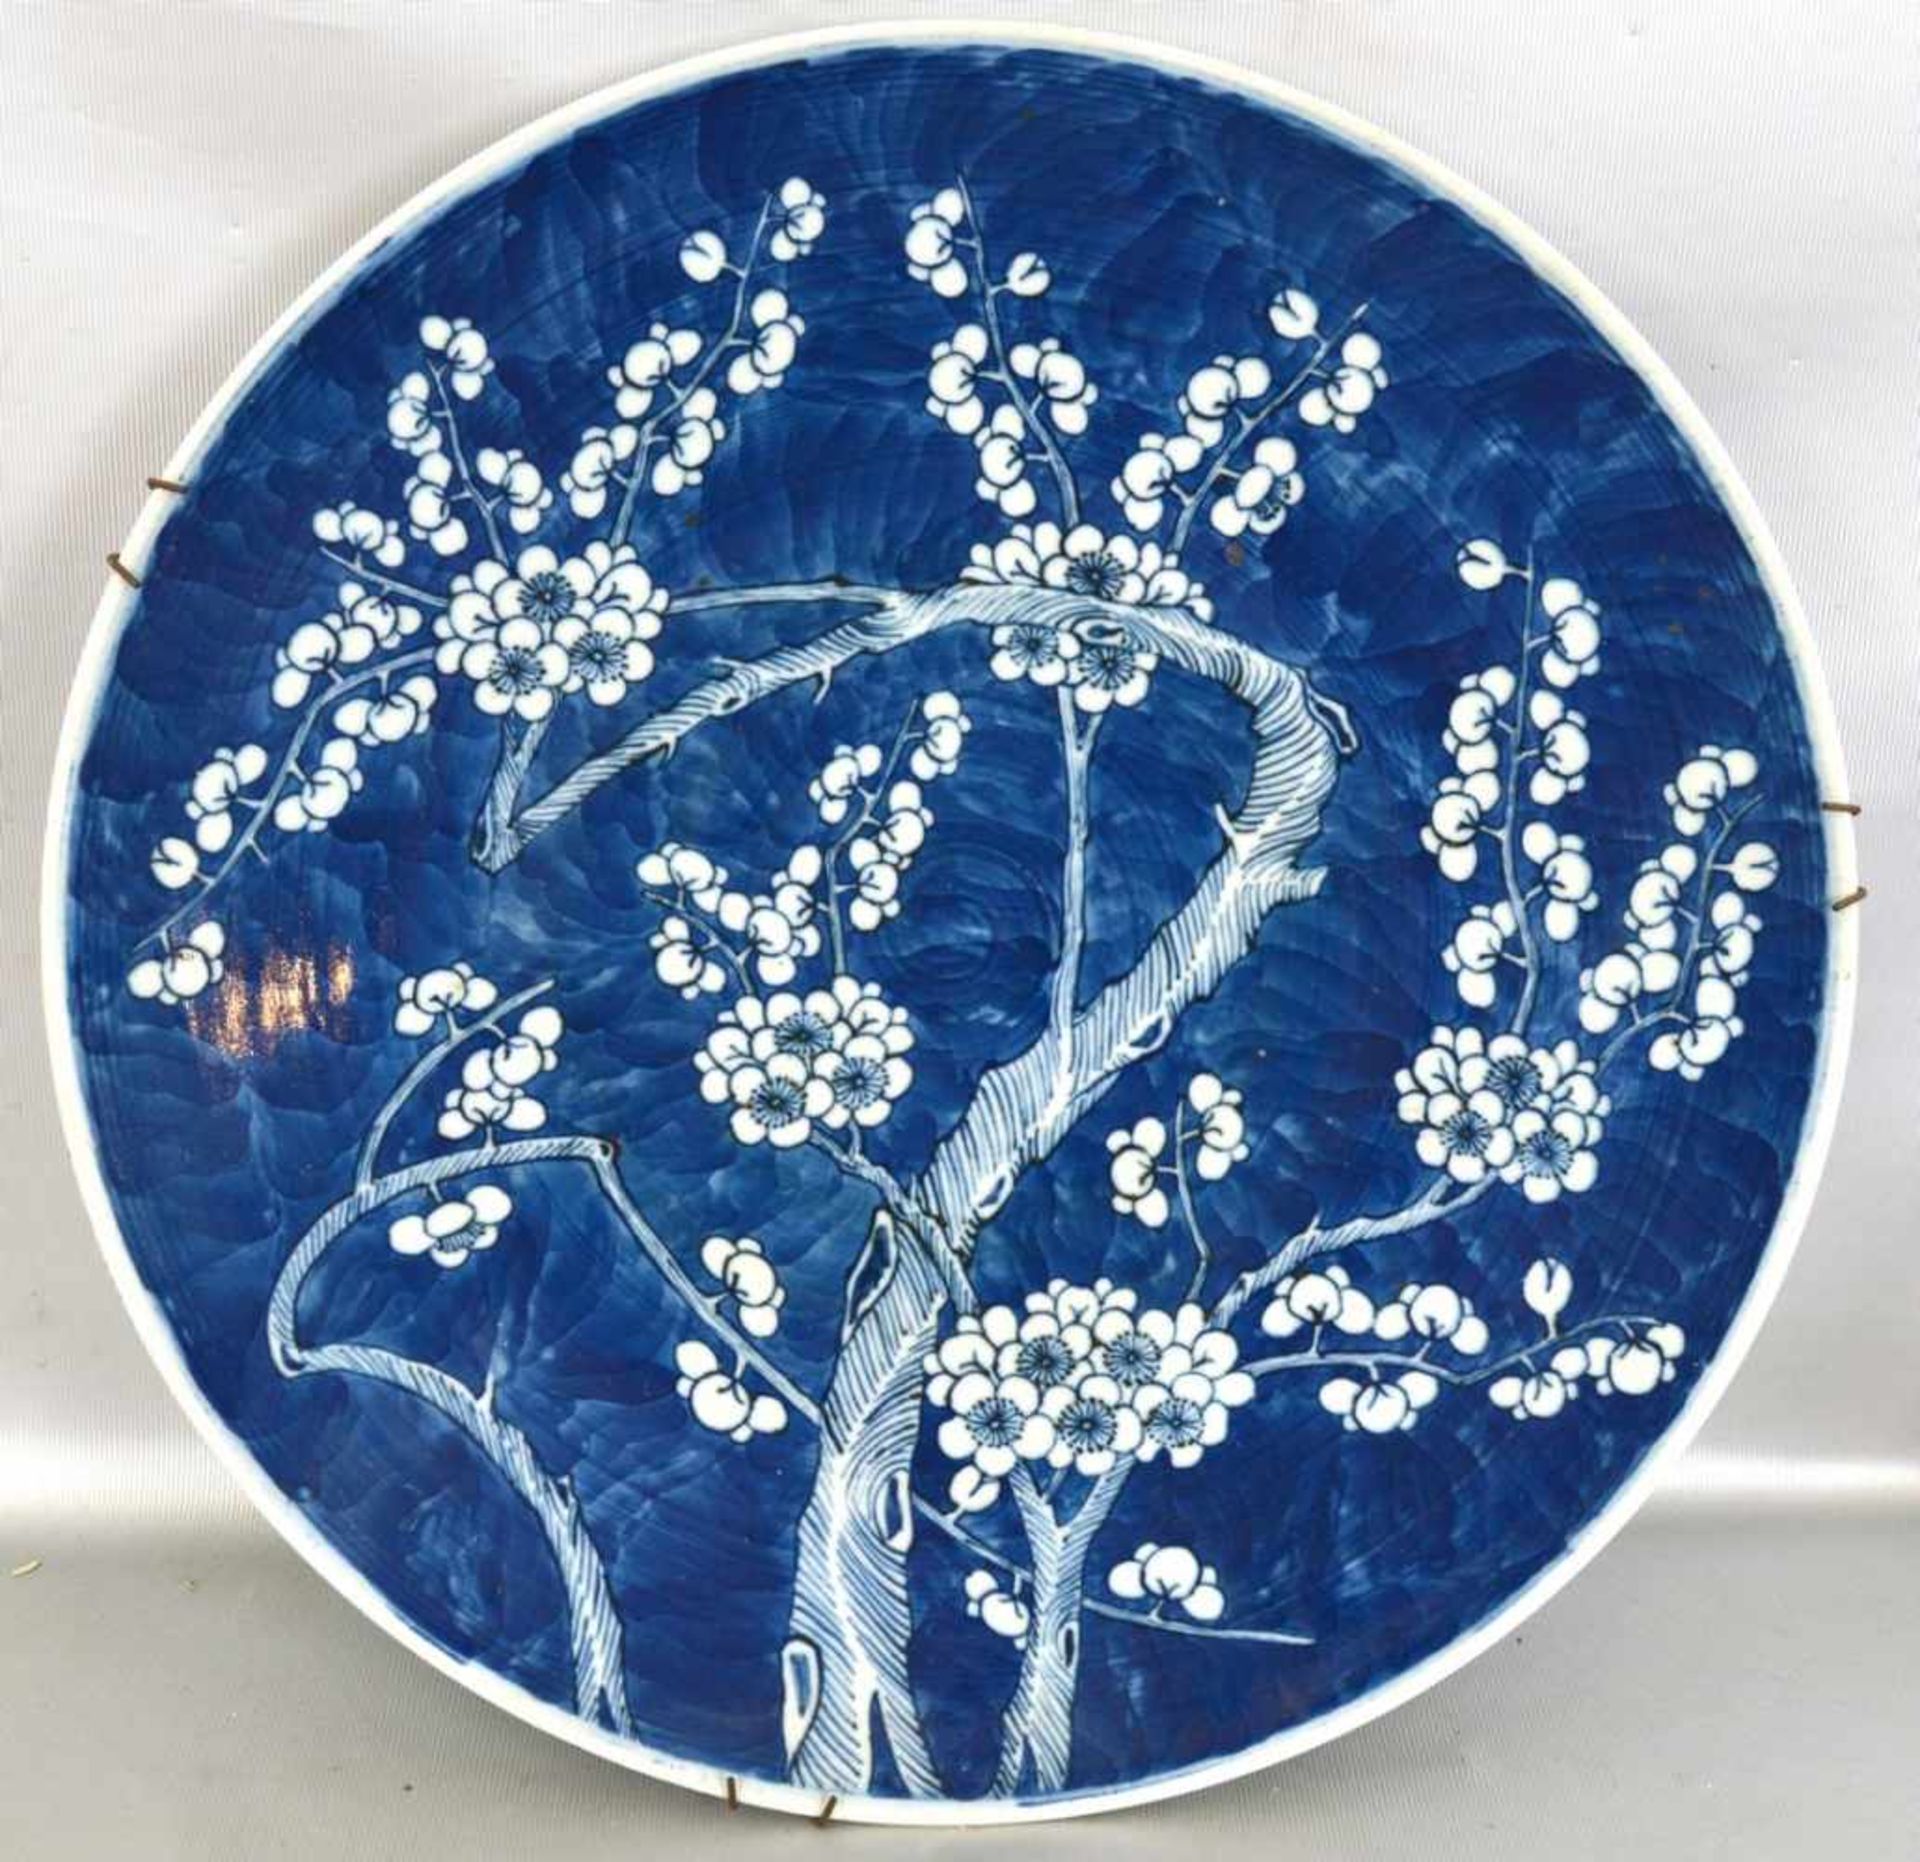 Großer Teller Porzellan, Rand und Spiegel mit Blütenranken verziert, blau bemalt, Dm 37 cm, 19. Jh.